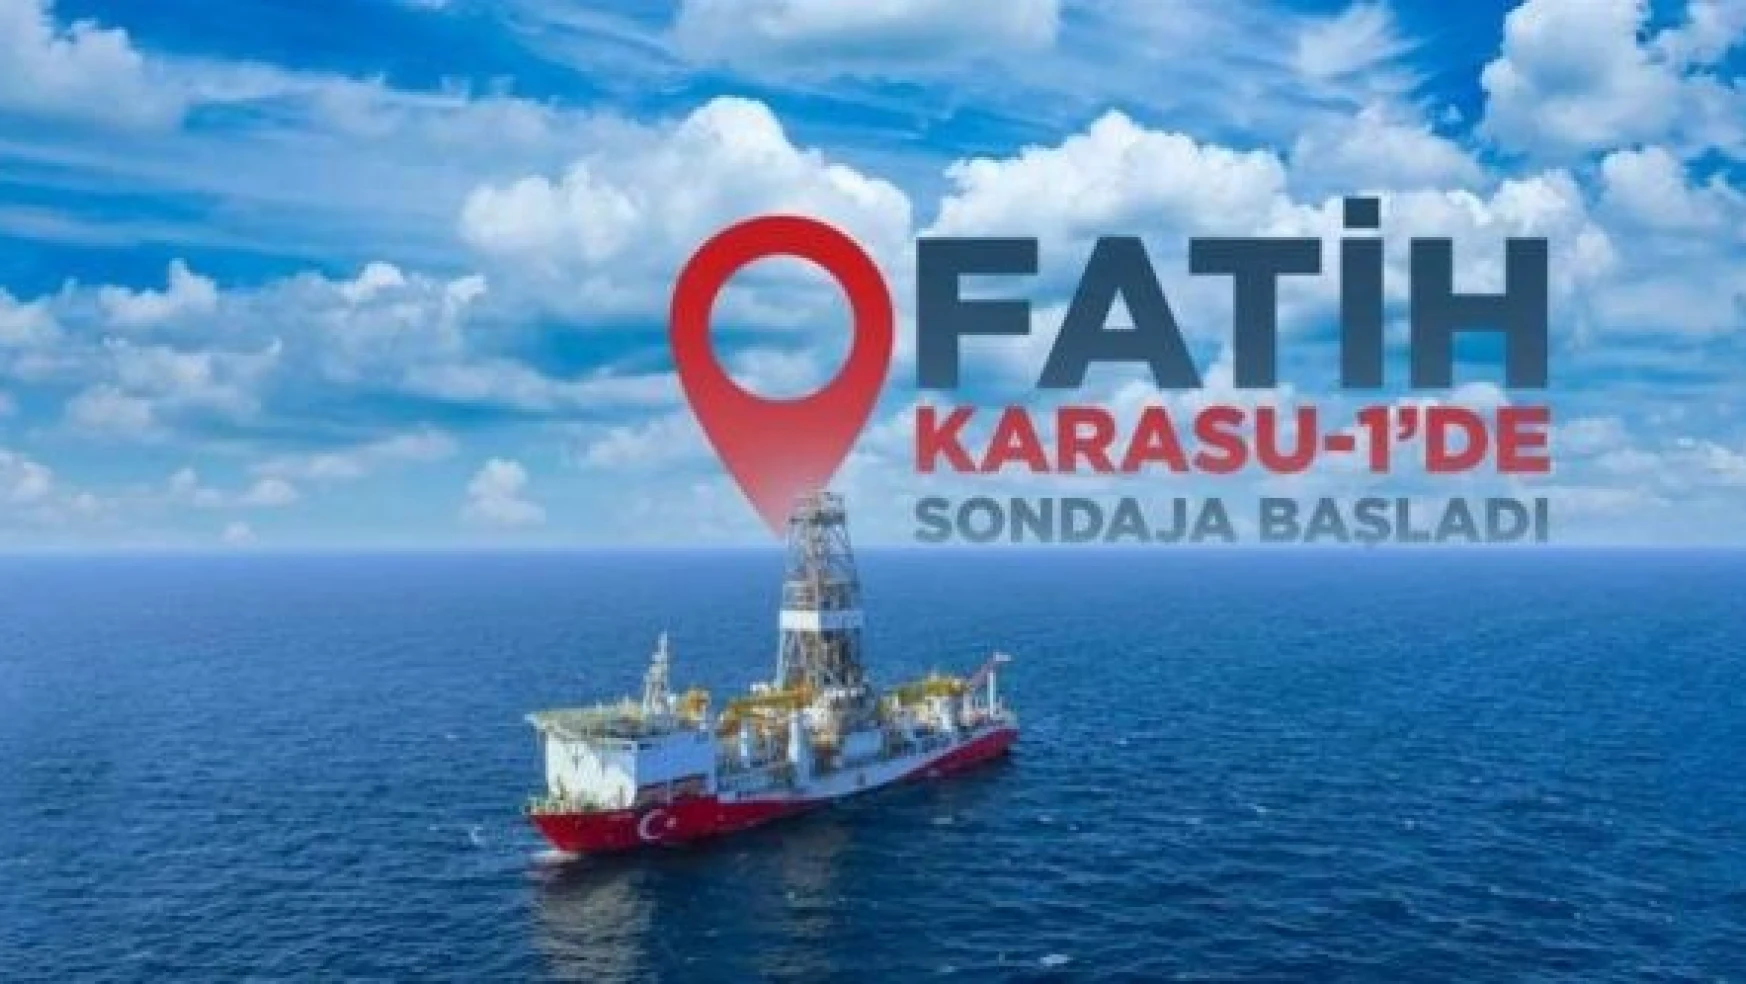 Fatih gemisi Karadeniz'deki üçüncü arama sondajına başladı